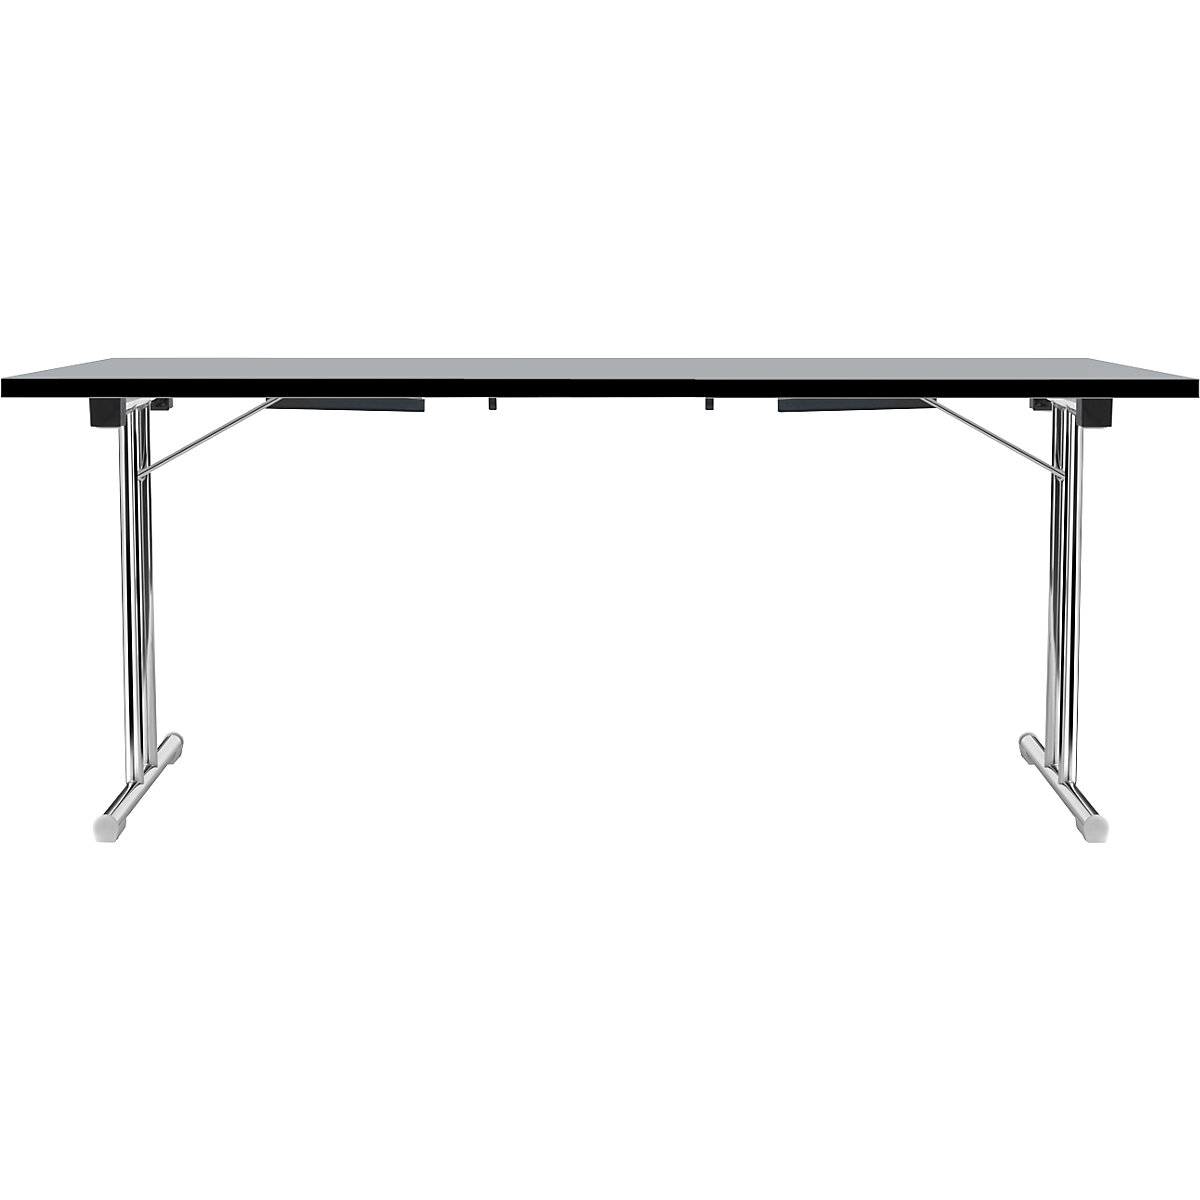 Tavolo pieghevole con basamento a T doppio, telaio in tubo tondo d'acciaio, cromato, grigio chiaro/nero, largh. x prof. 1800 x 800 mm-8